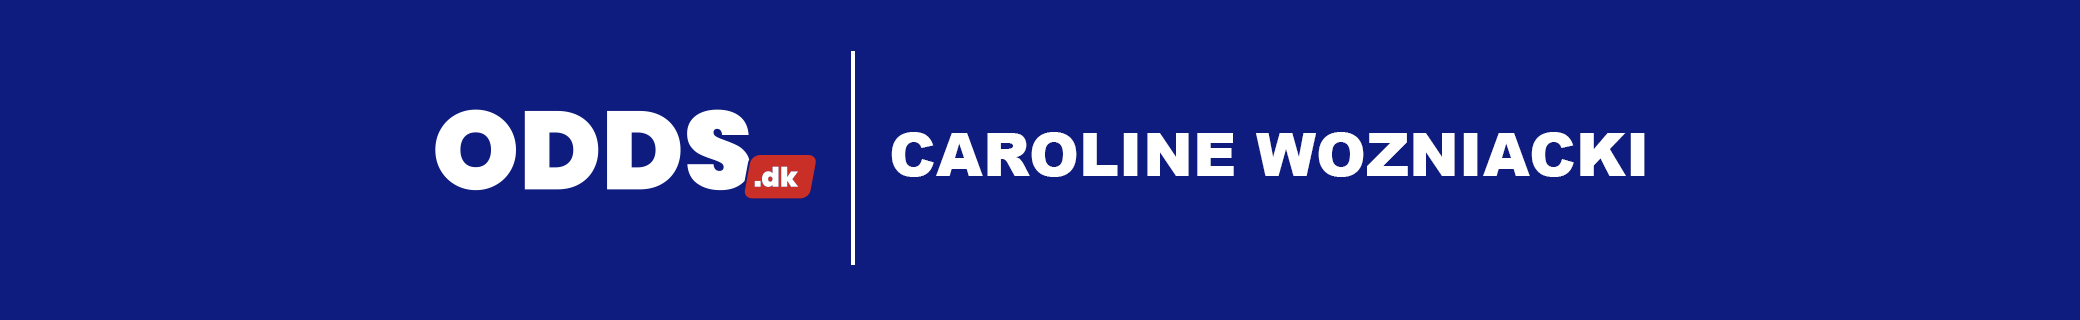 Kampprogram for Caroline Wozniacki